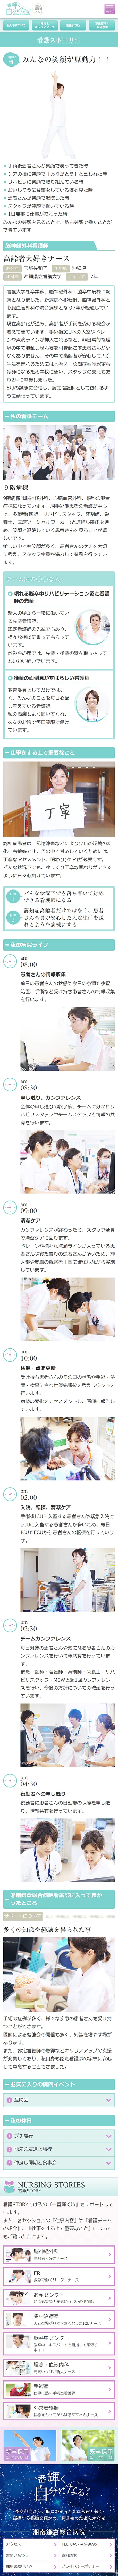 [湘南鎌倉総合病院看護師採用サイト] 看護ストーリーページ | スマホビュー